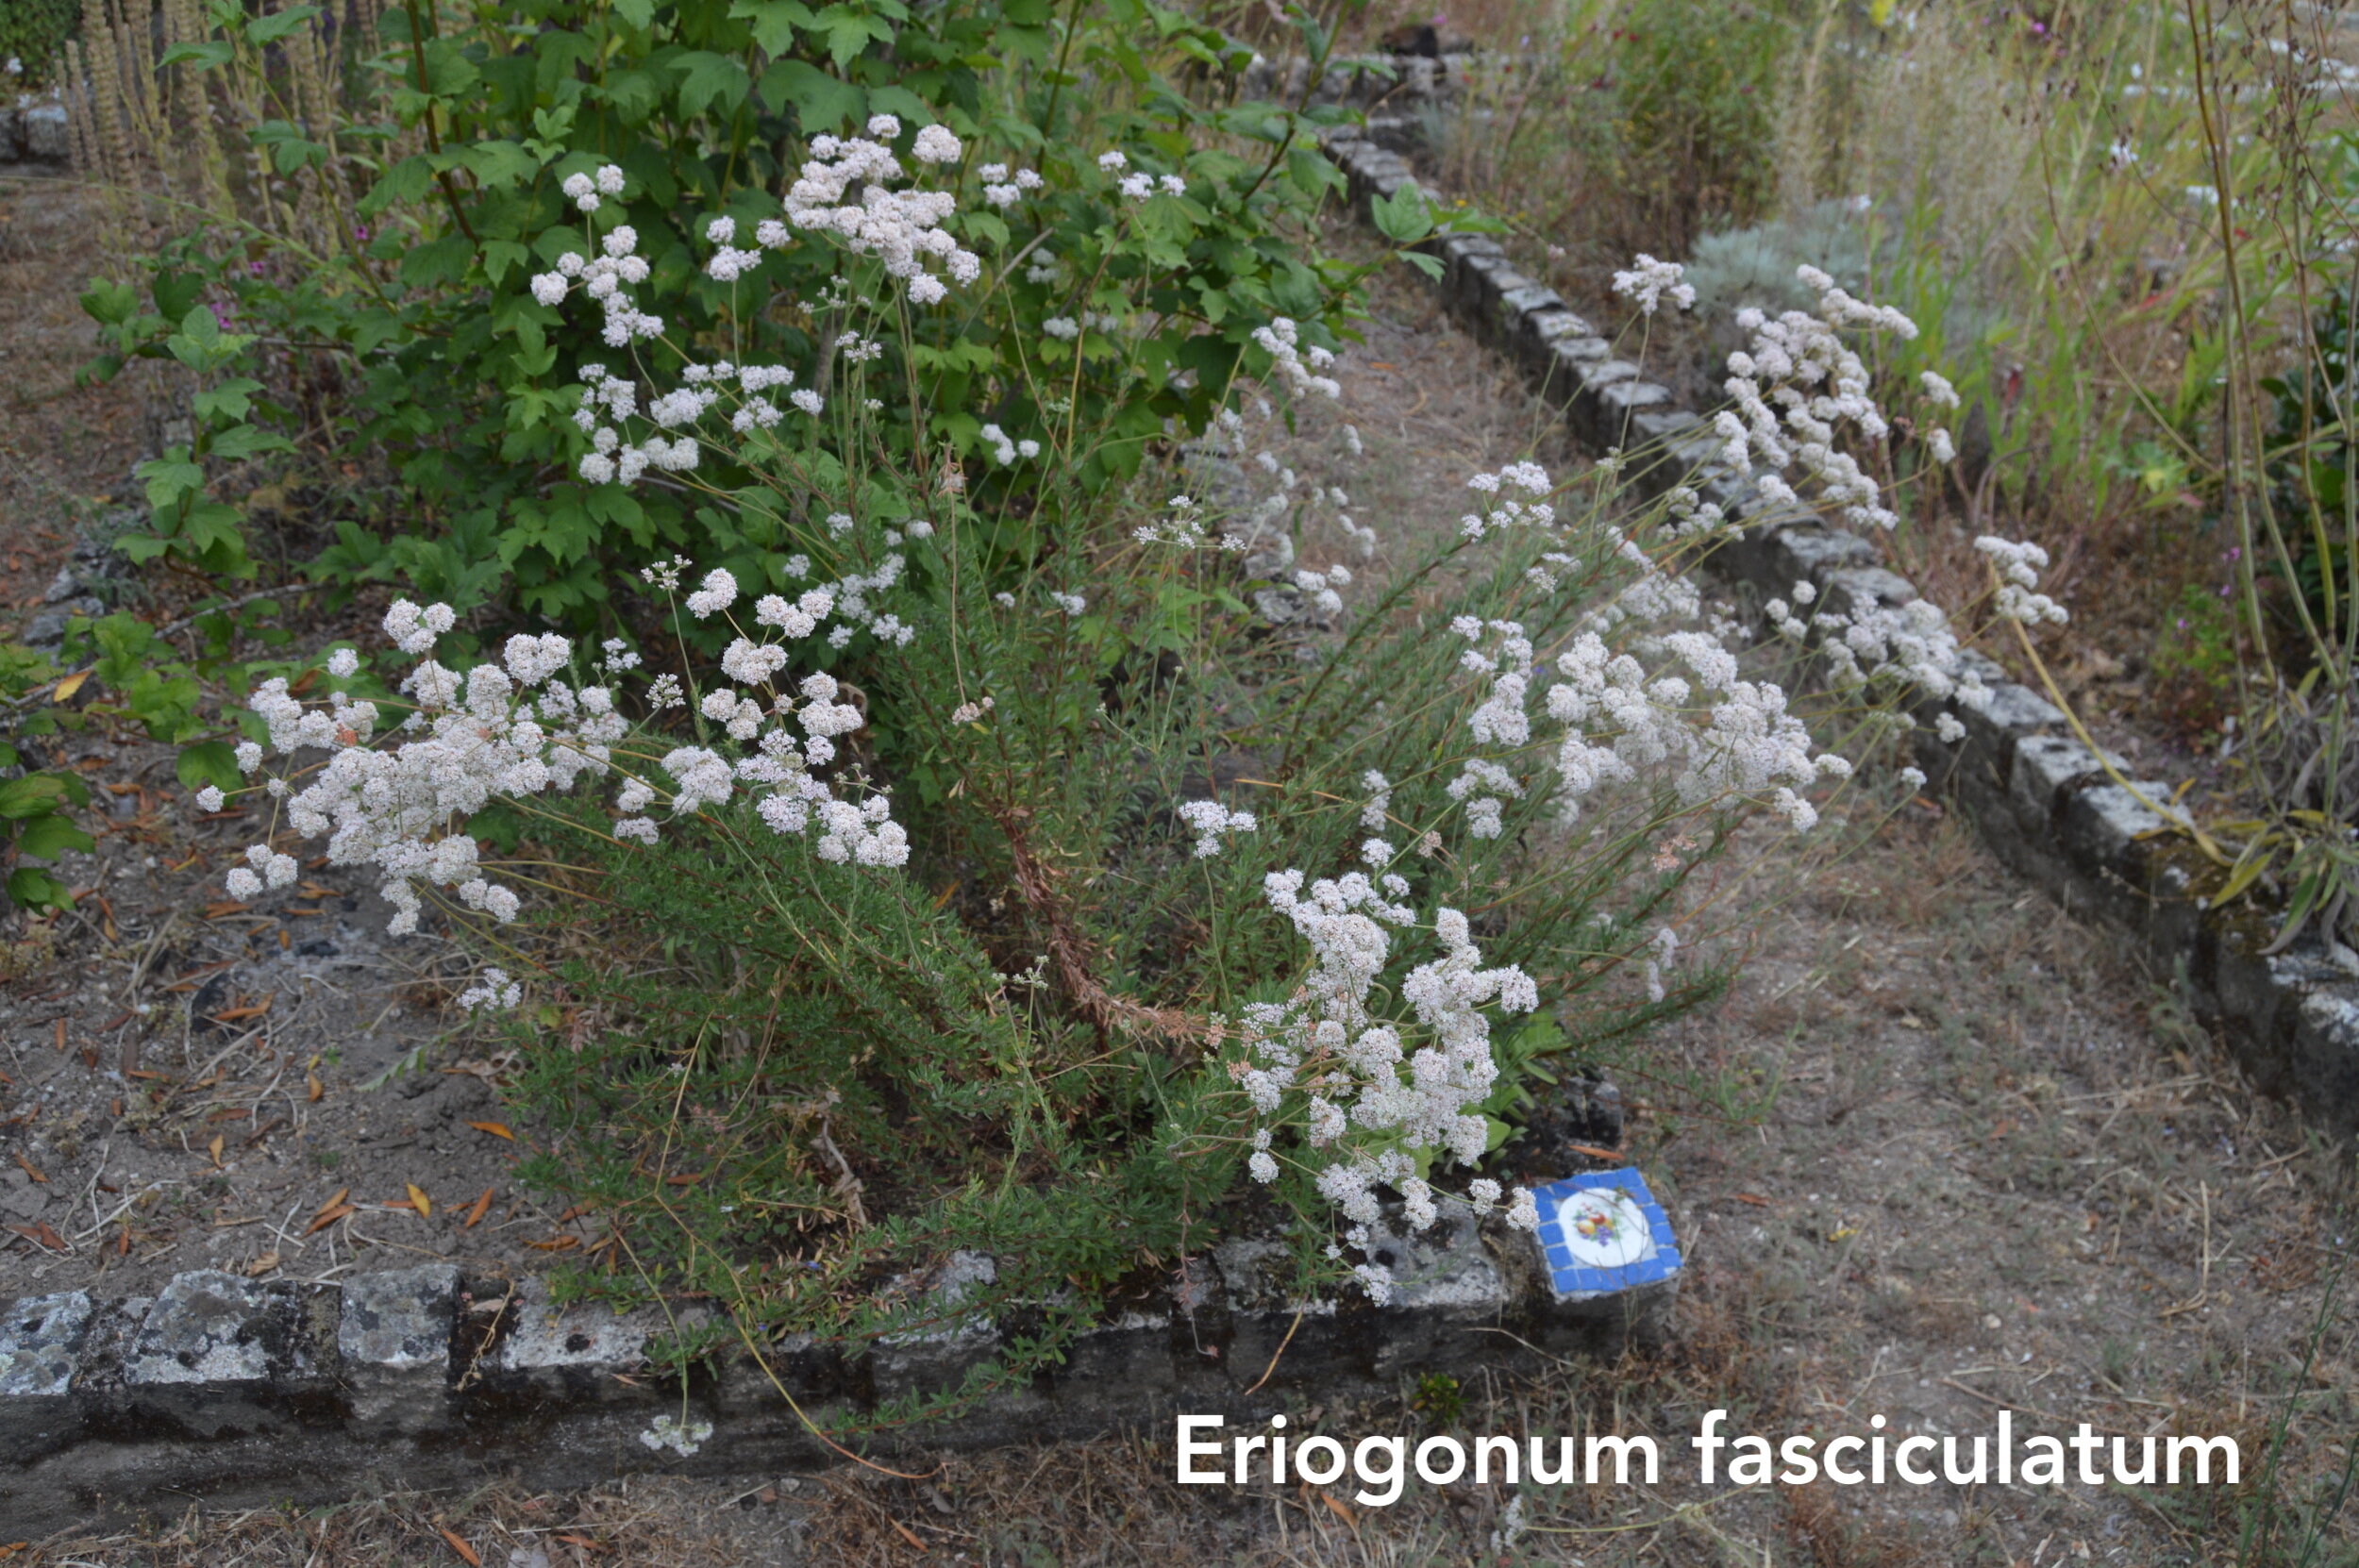 Eriogonum fasciculatum copy.jpg